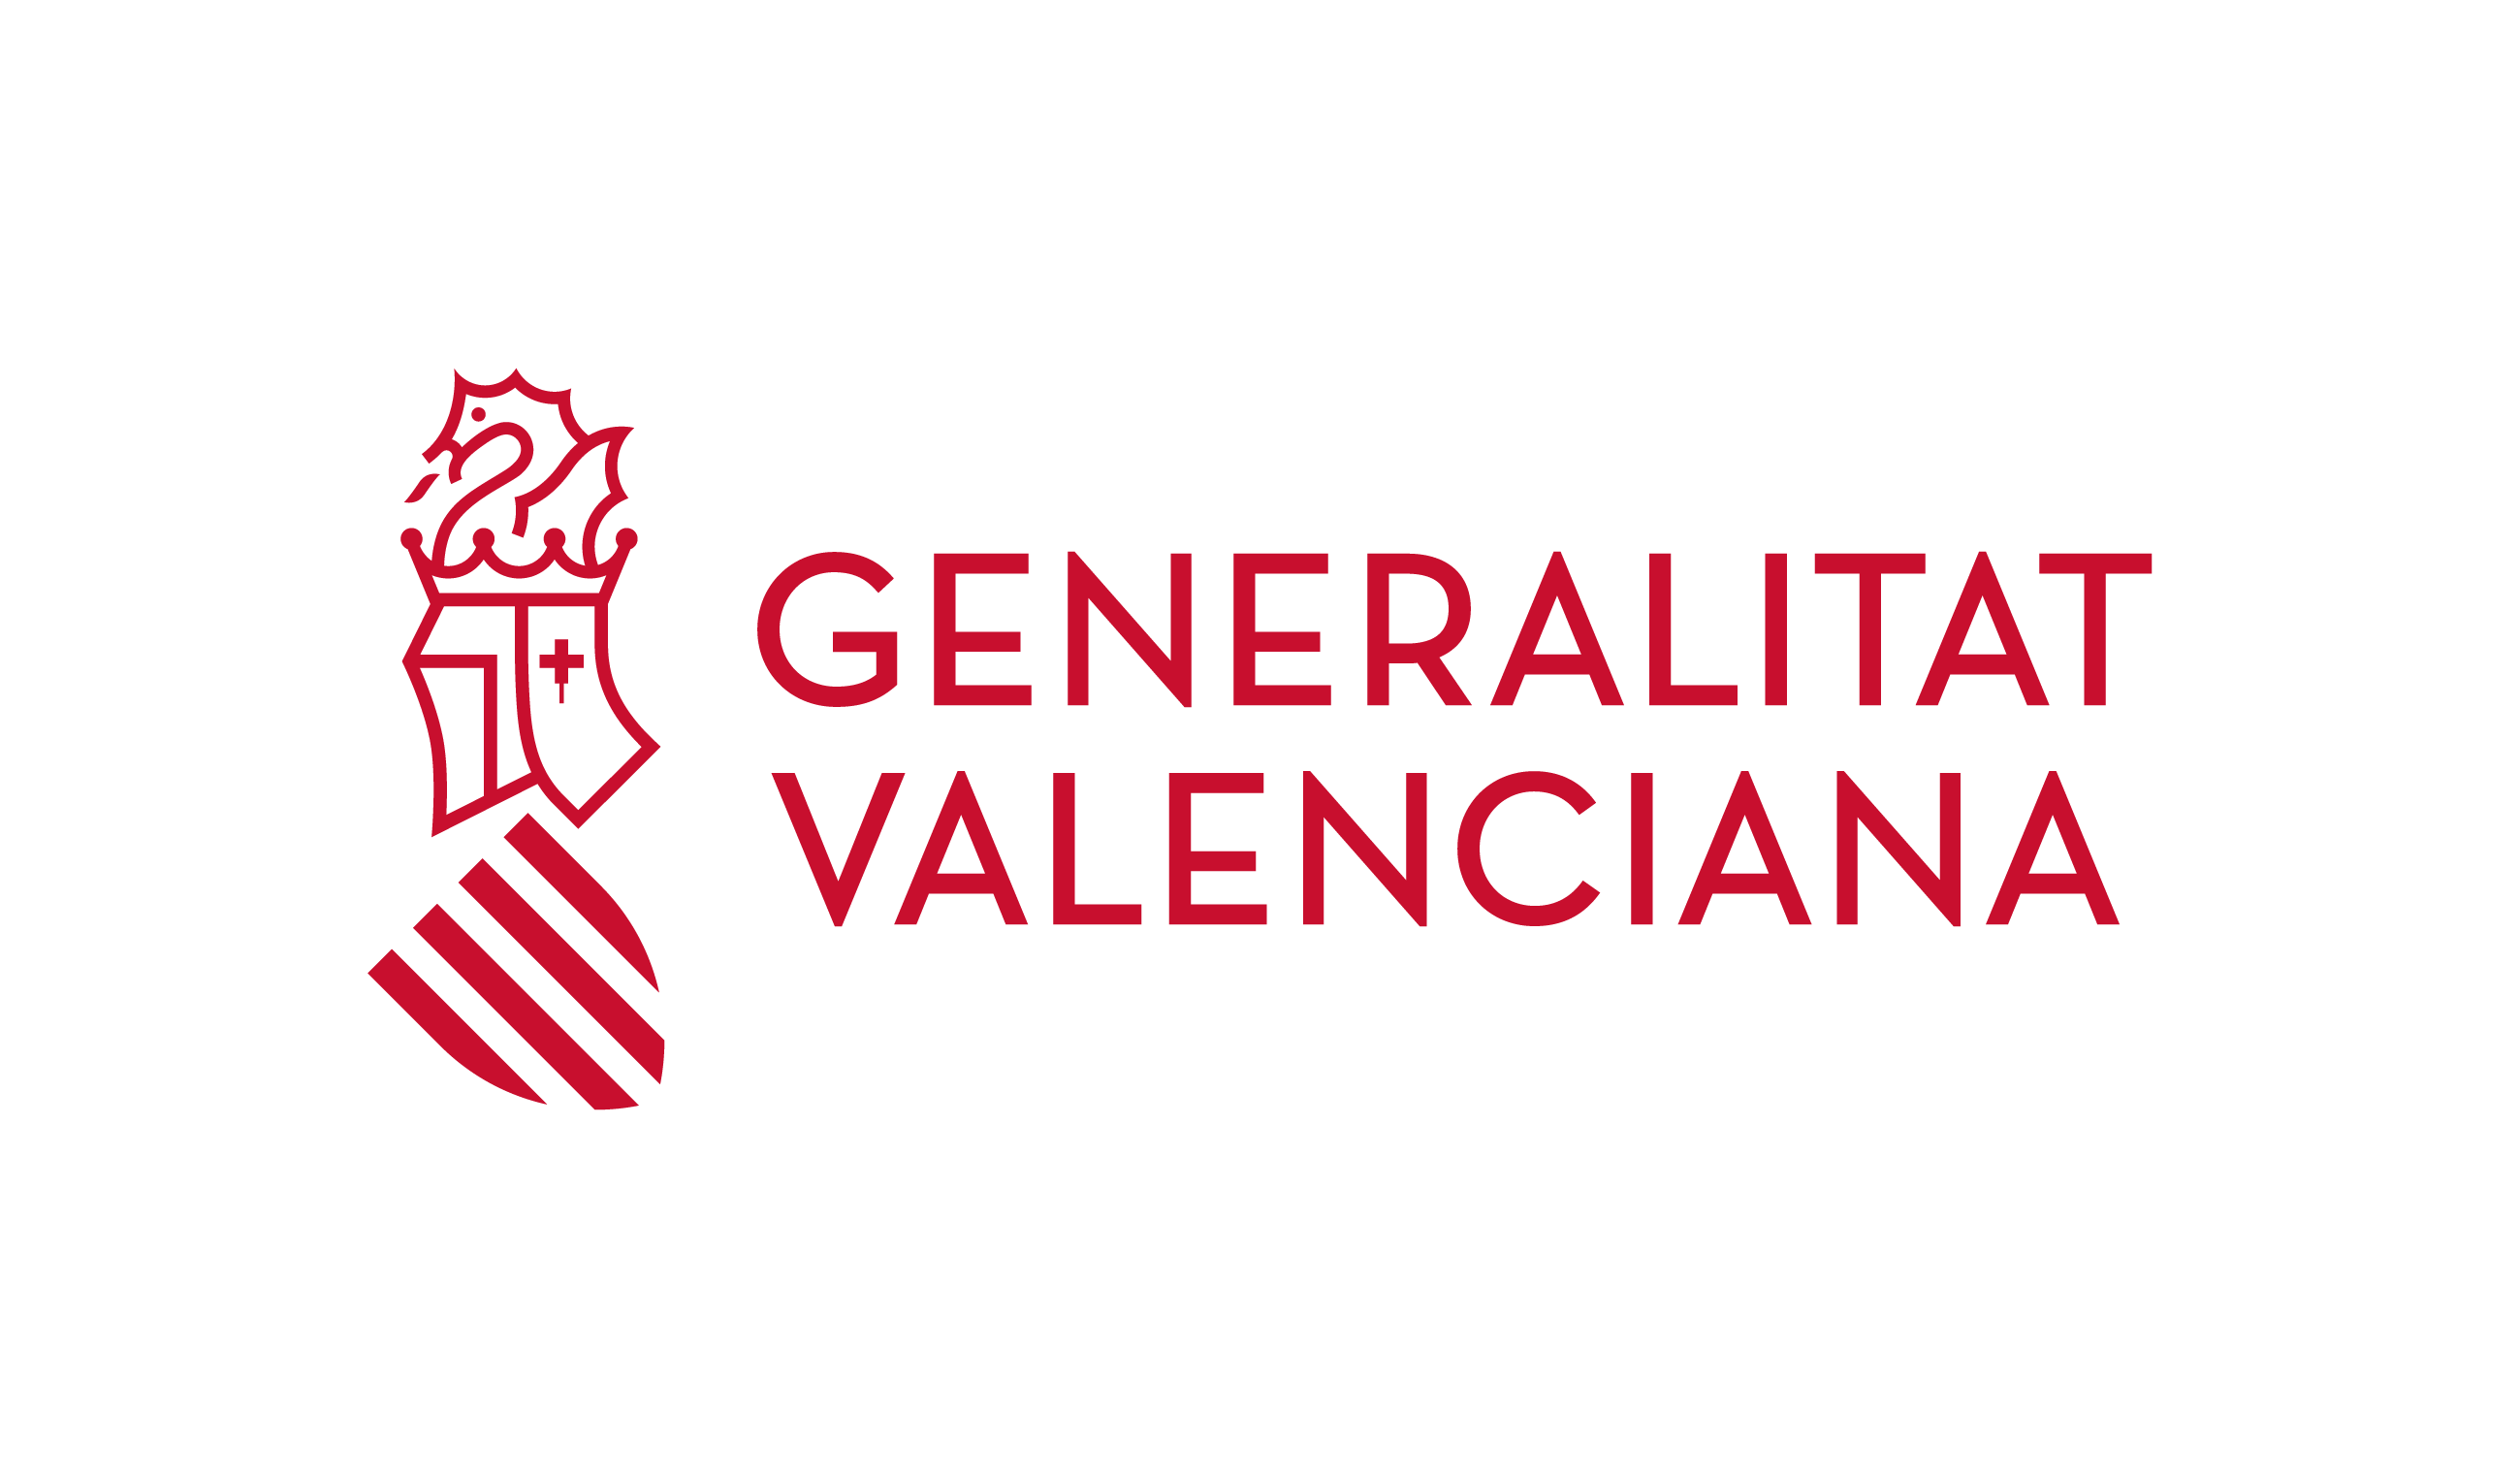 Logo Comunitat Valenciana